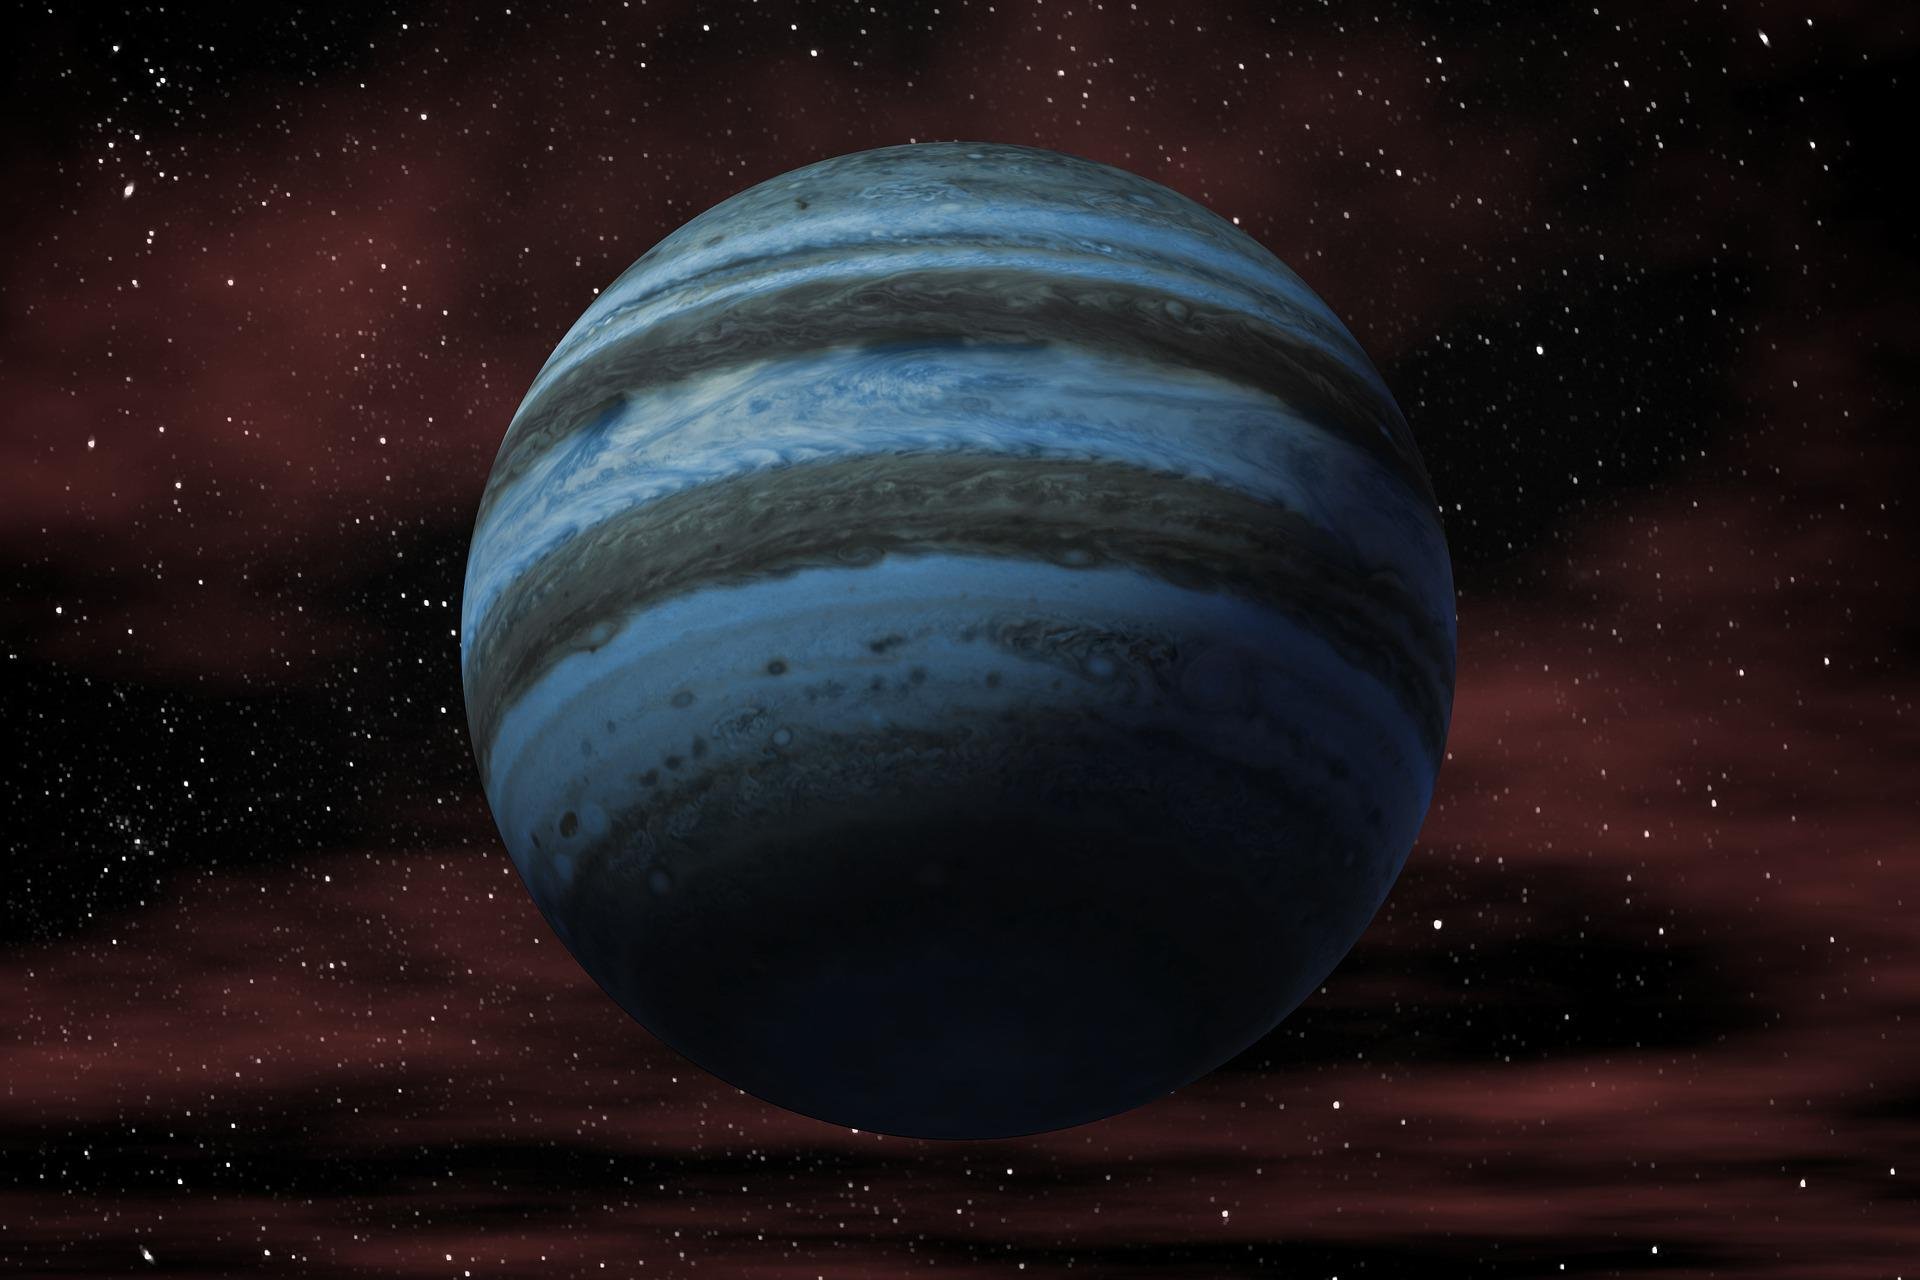 Os primeiros exoplanetas descobertos eram gigantes gasosos. Seu tamanho facilitou as observações (Fonte: Pixabay/Elchinator)